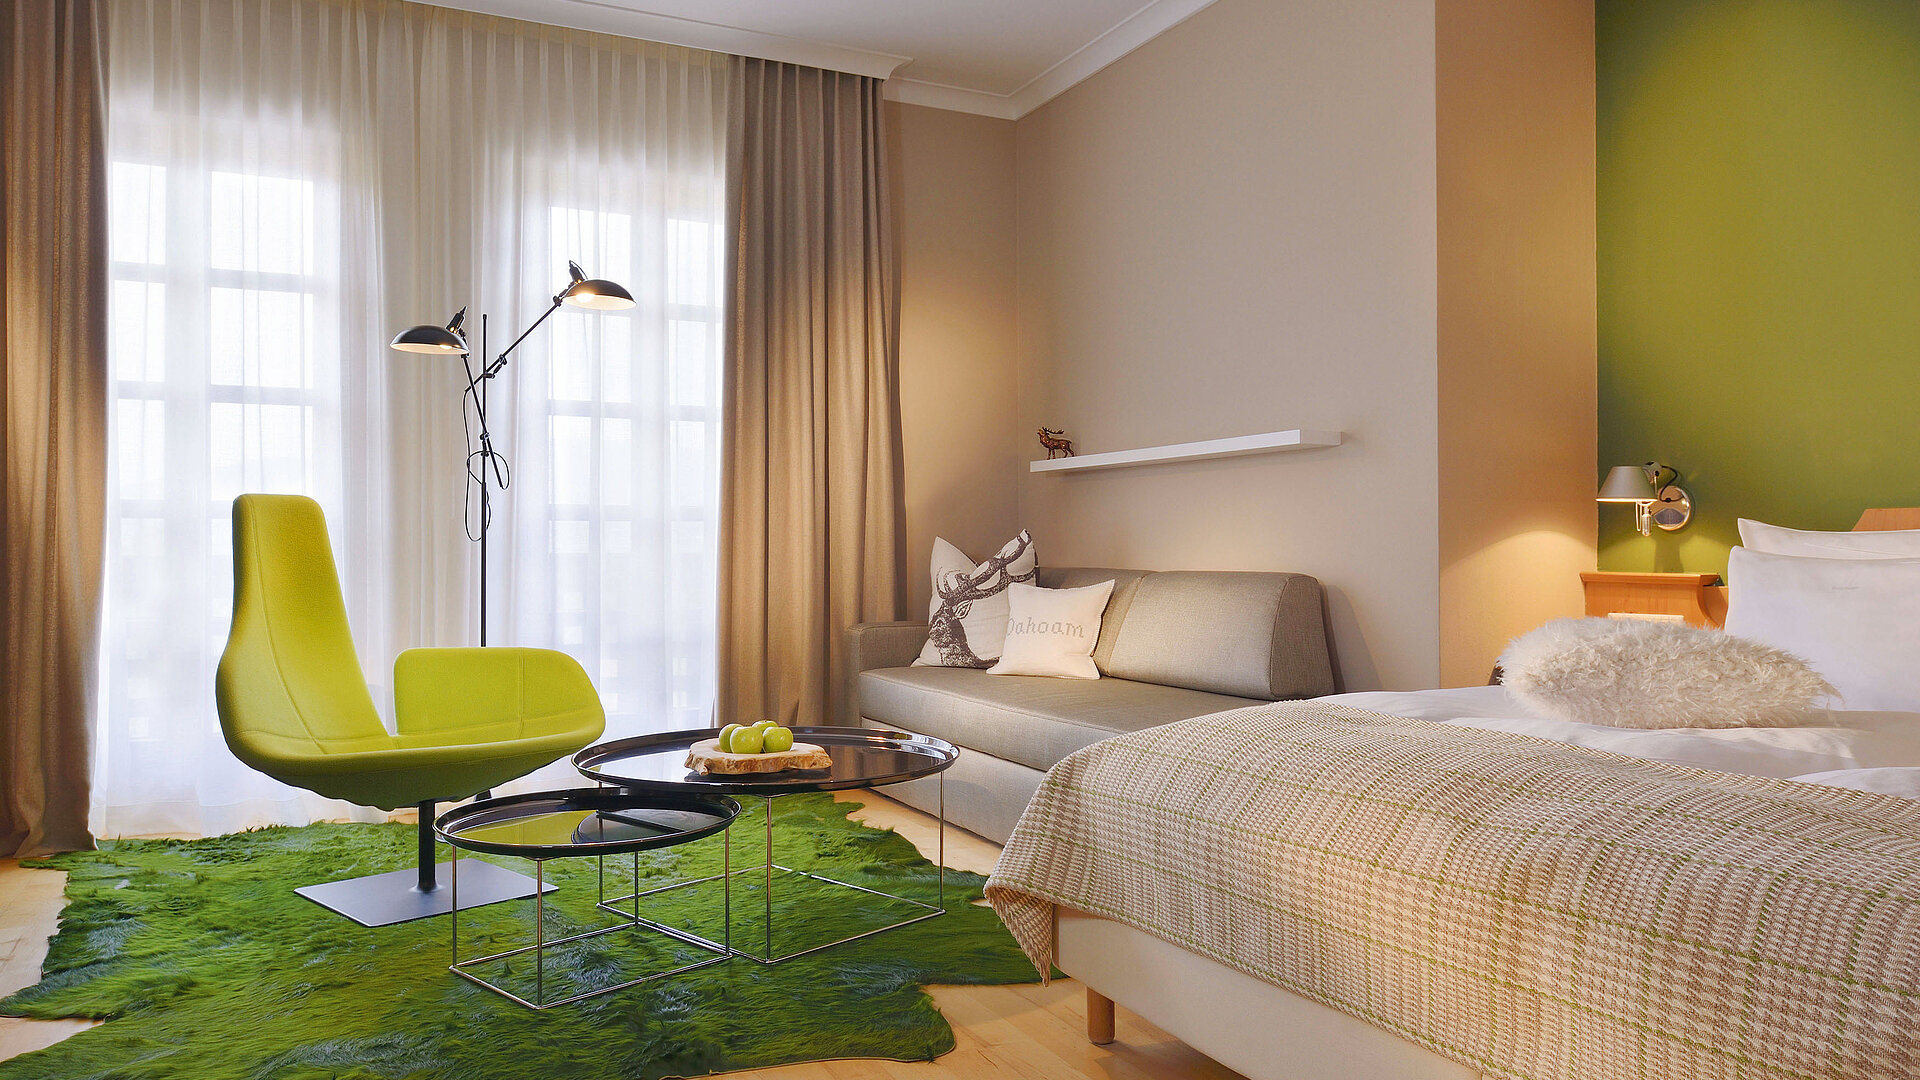 Zimmer mit Bett, Sofa und Sitzbereich, überwiegend gehalten in Grün- und Beigetönen.